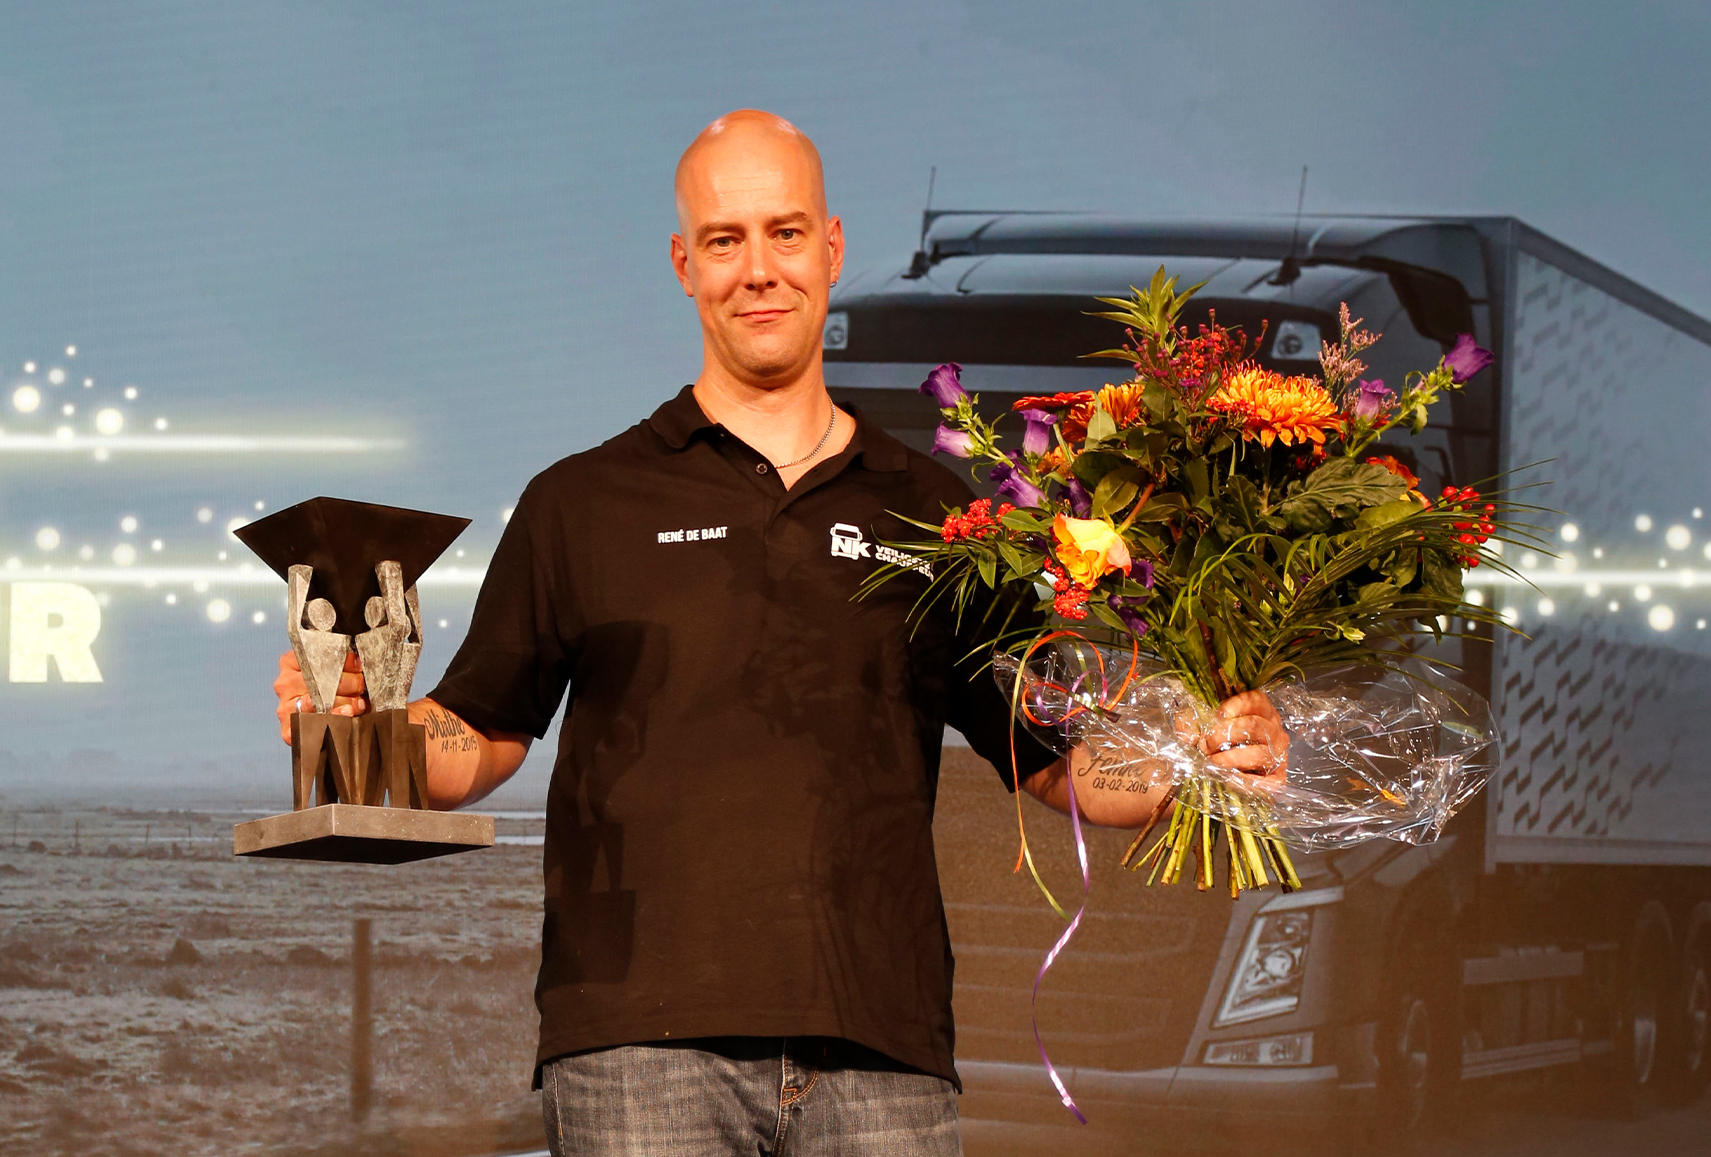 Winnaar NK Veiligste Chauffeur 2021 René de Baat.jpg 